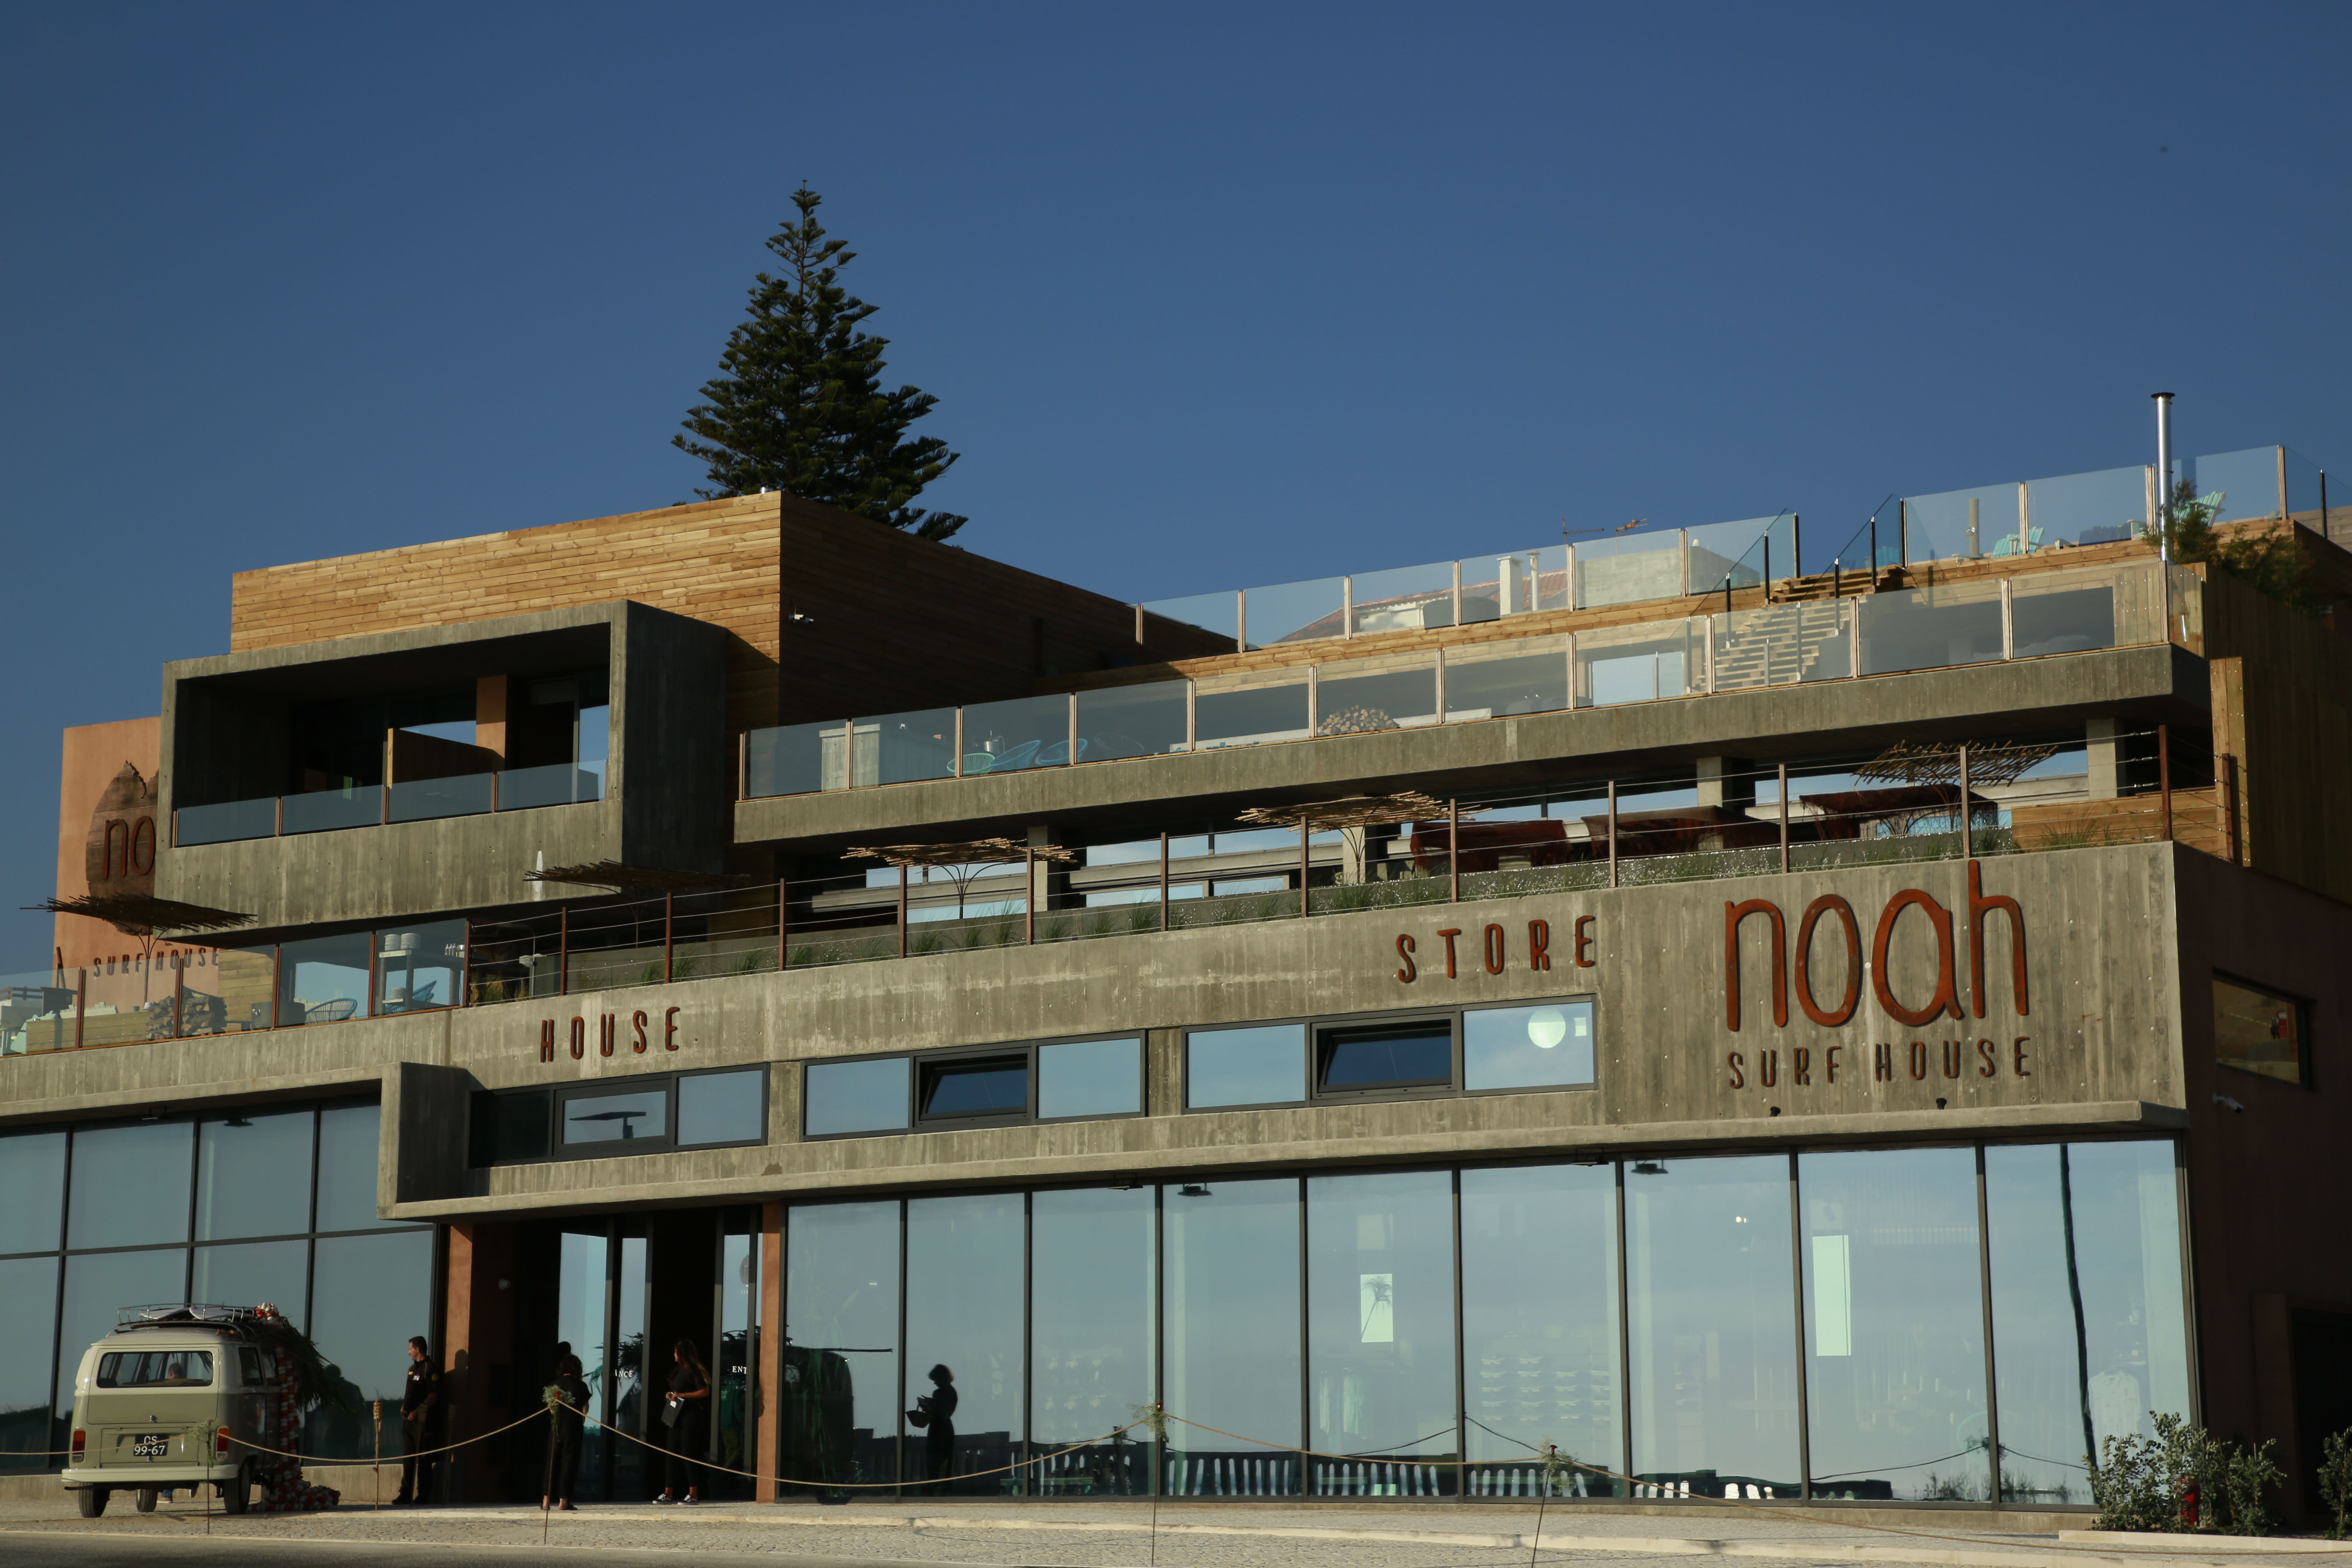 Inspirado no surfe, hotel Noah Surf House abre as portas em Portugal